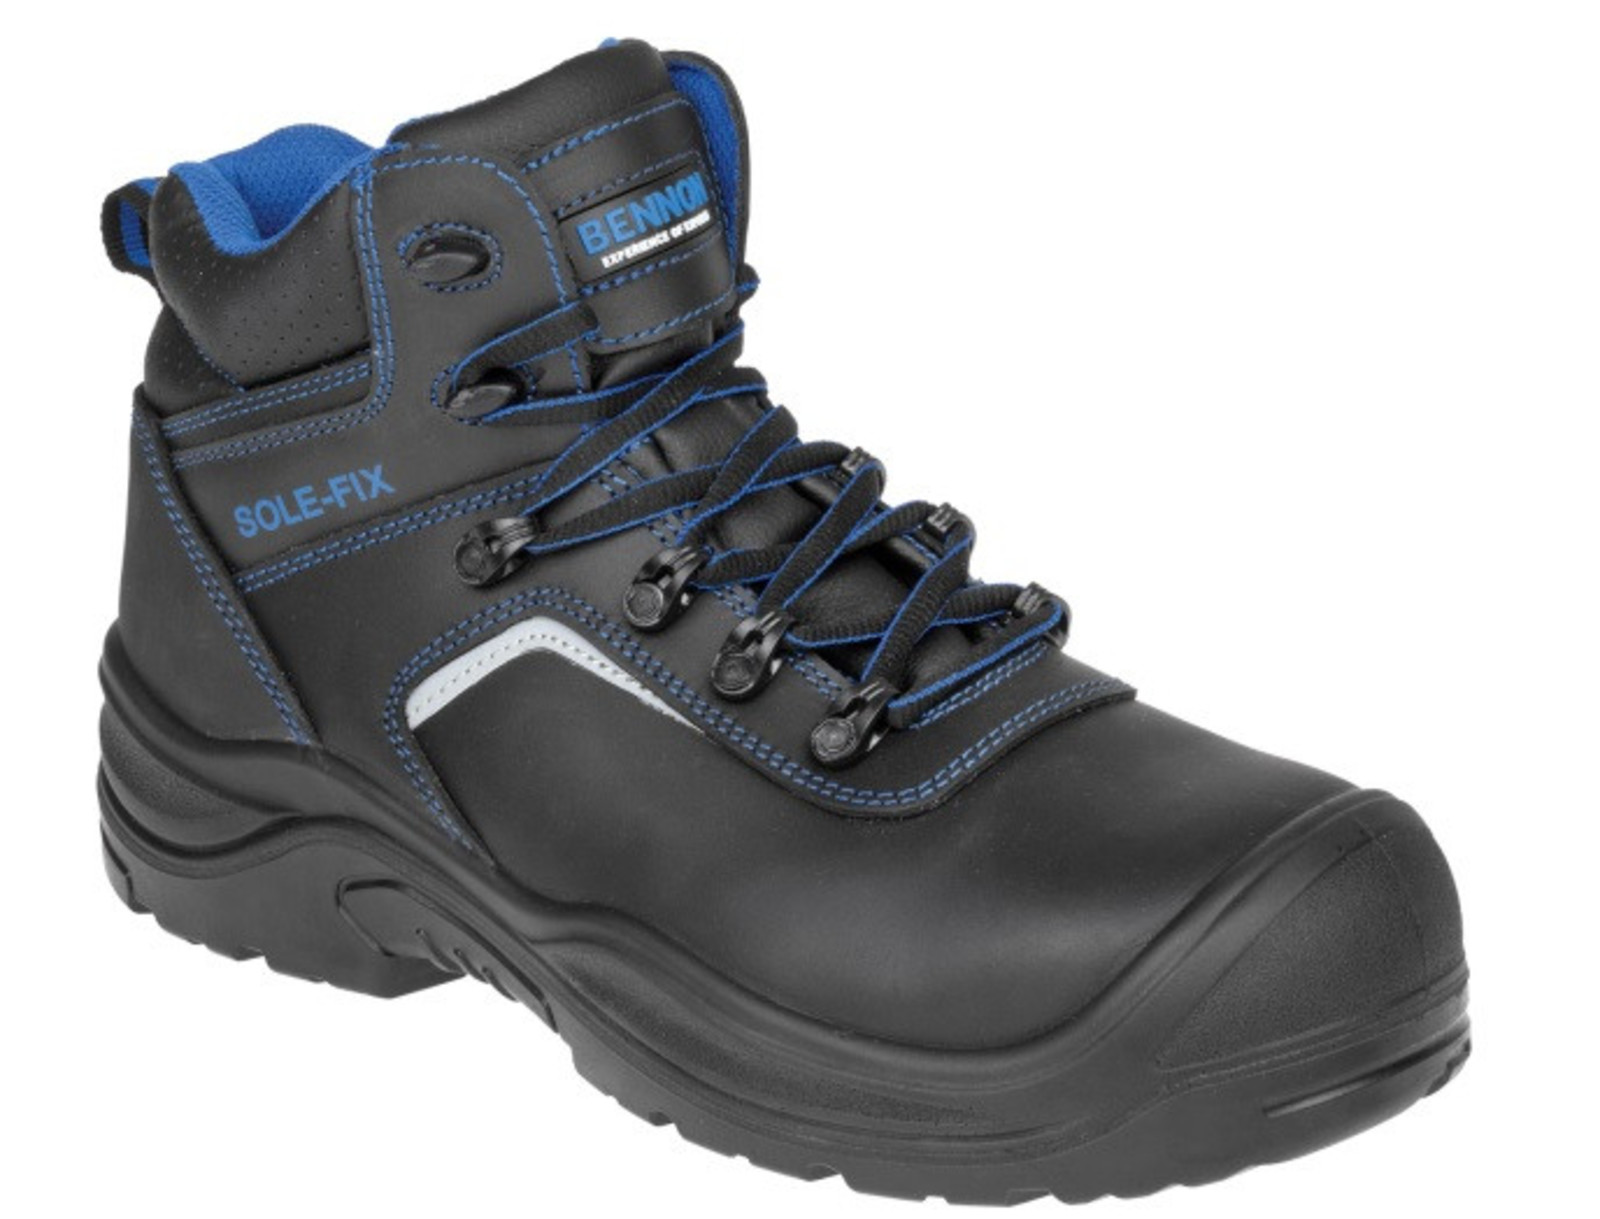 Bezpečnostná obuv Bennon Raptor S3 - veľkosť: 39, farba: čierna/modrá